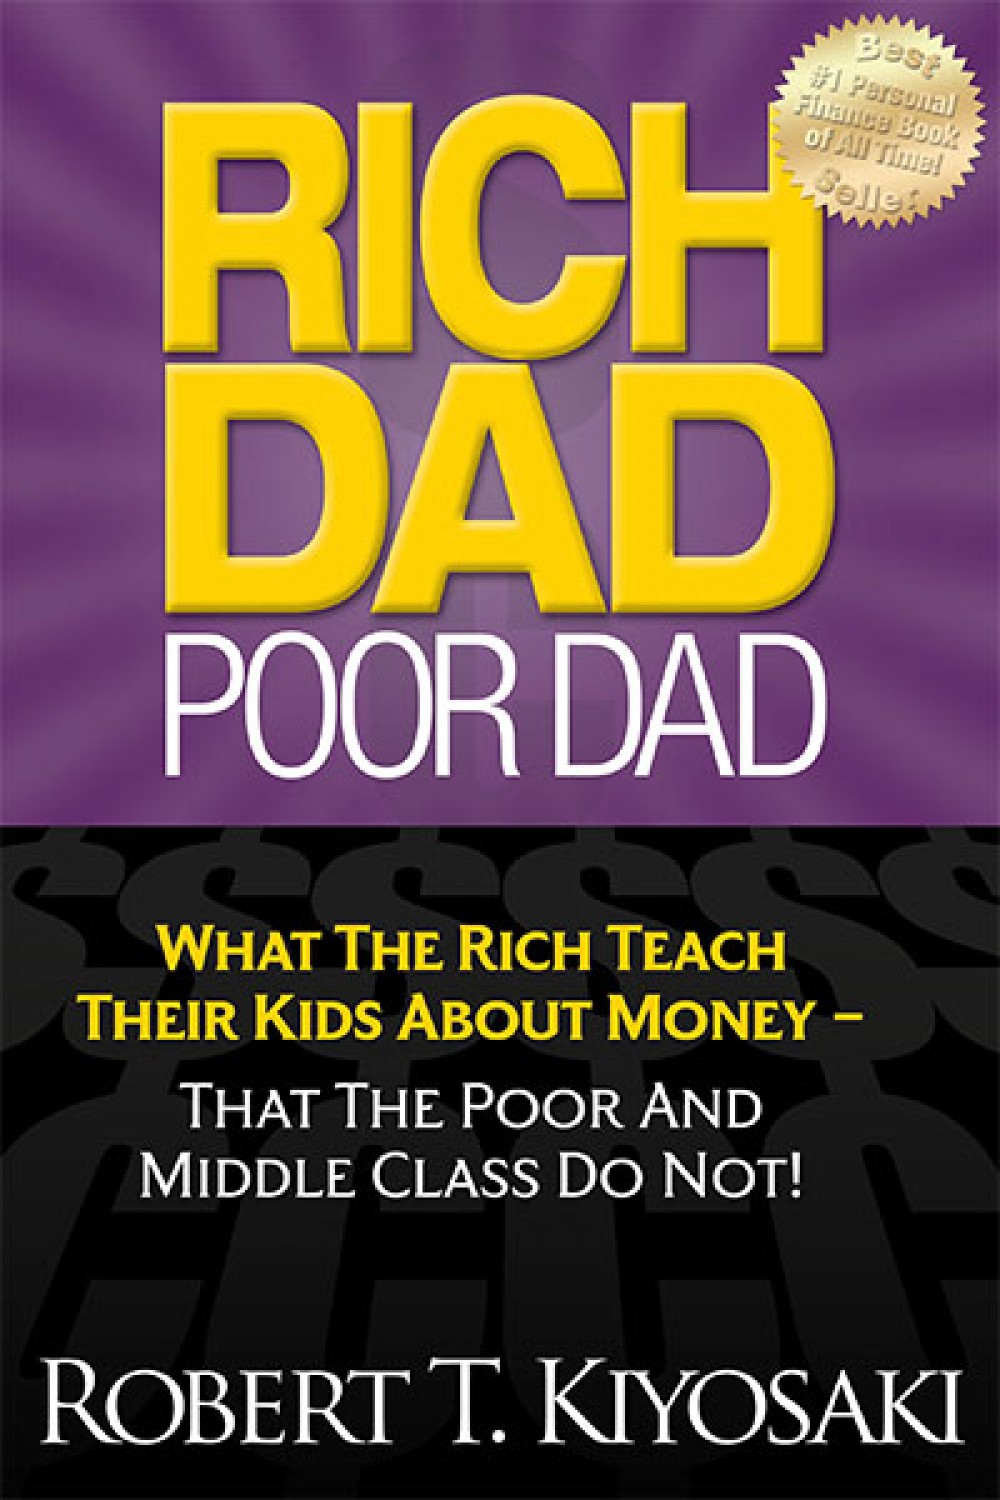 Книга на английском - Rich Dad, Poor Dad by Robert T. Kiyosaki (Book 2) - Богатый Папа, Бедный Папа - обложка книги скачать бесплатно